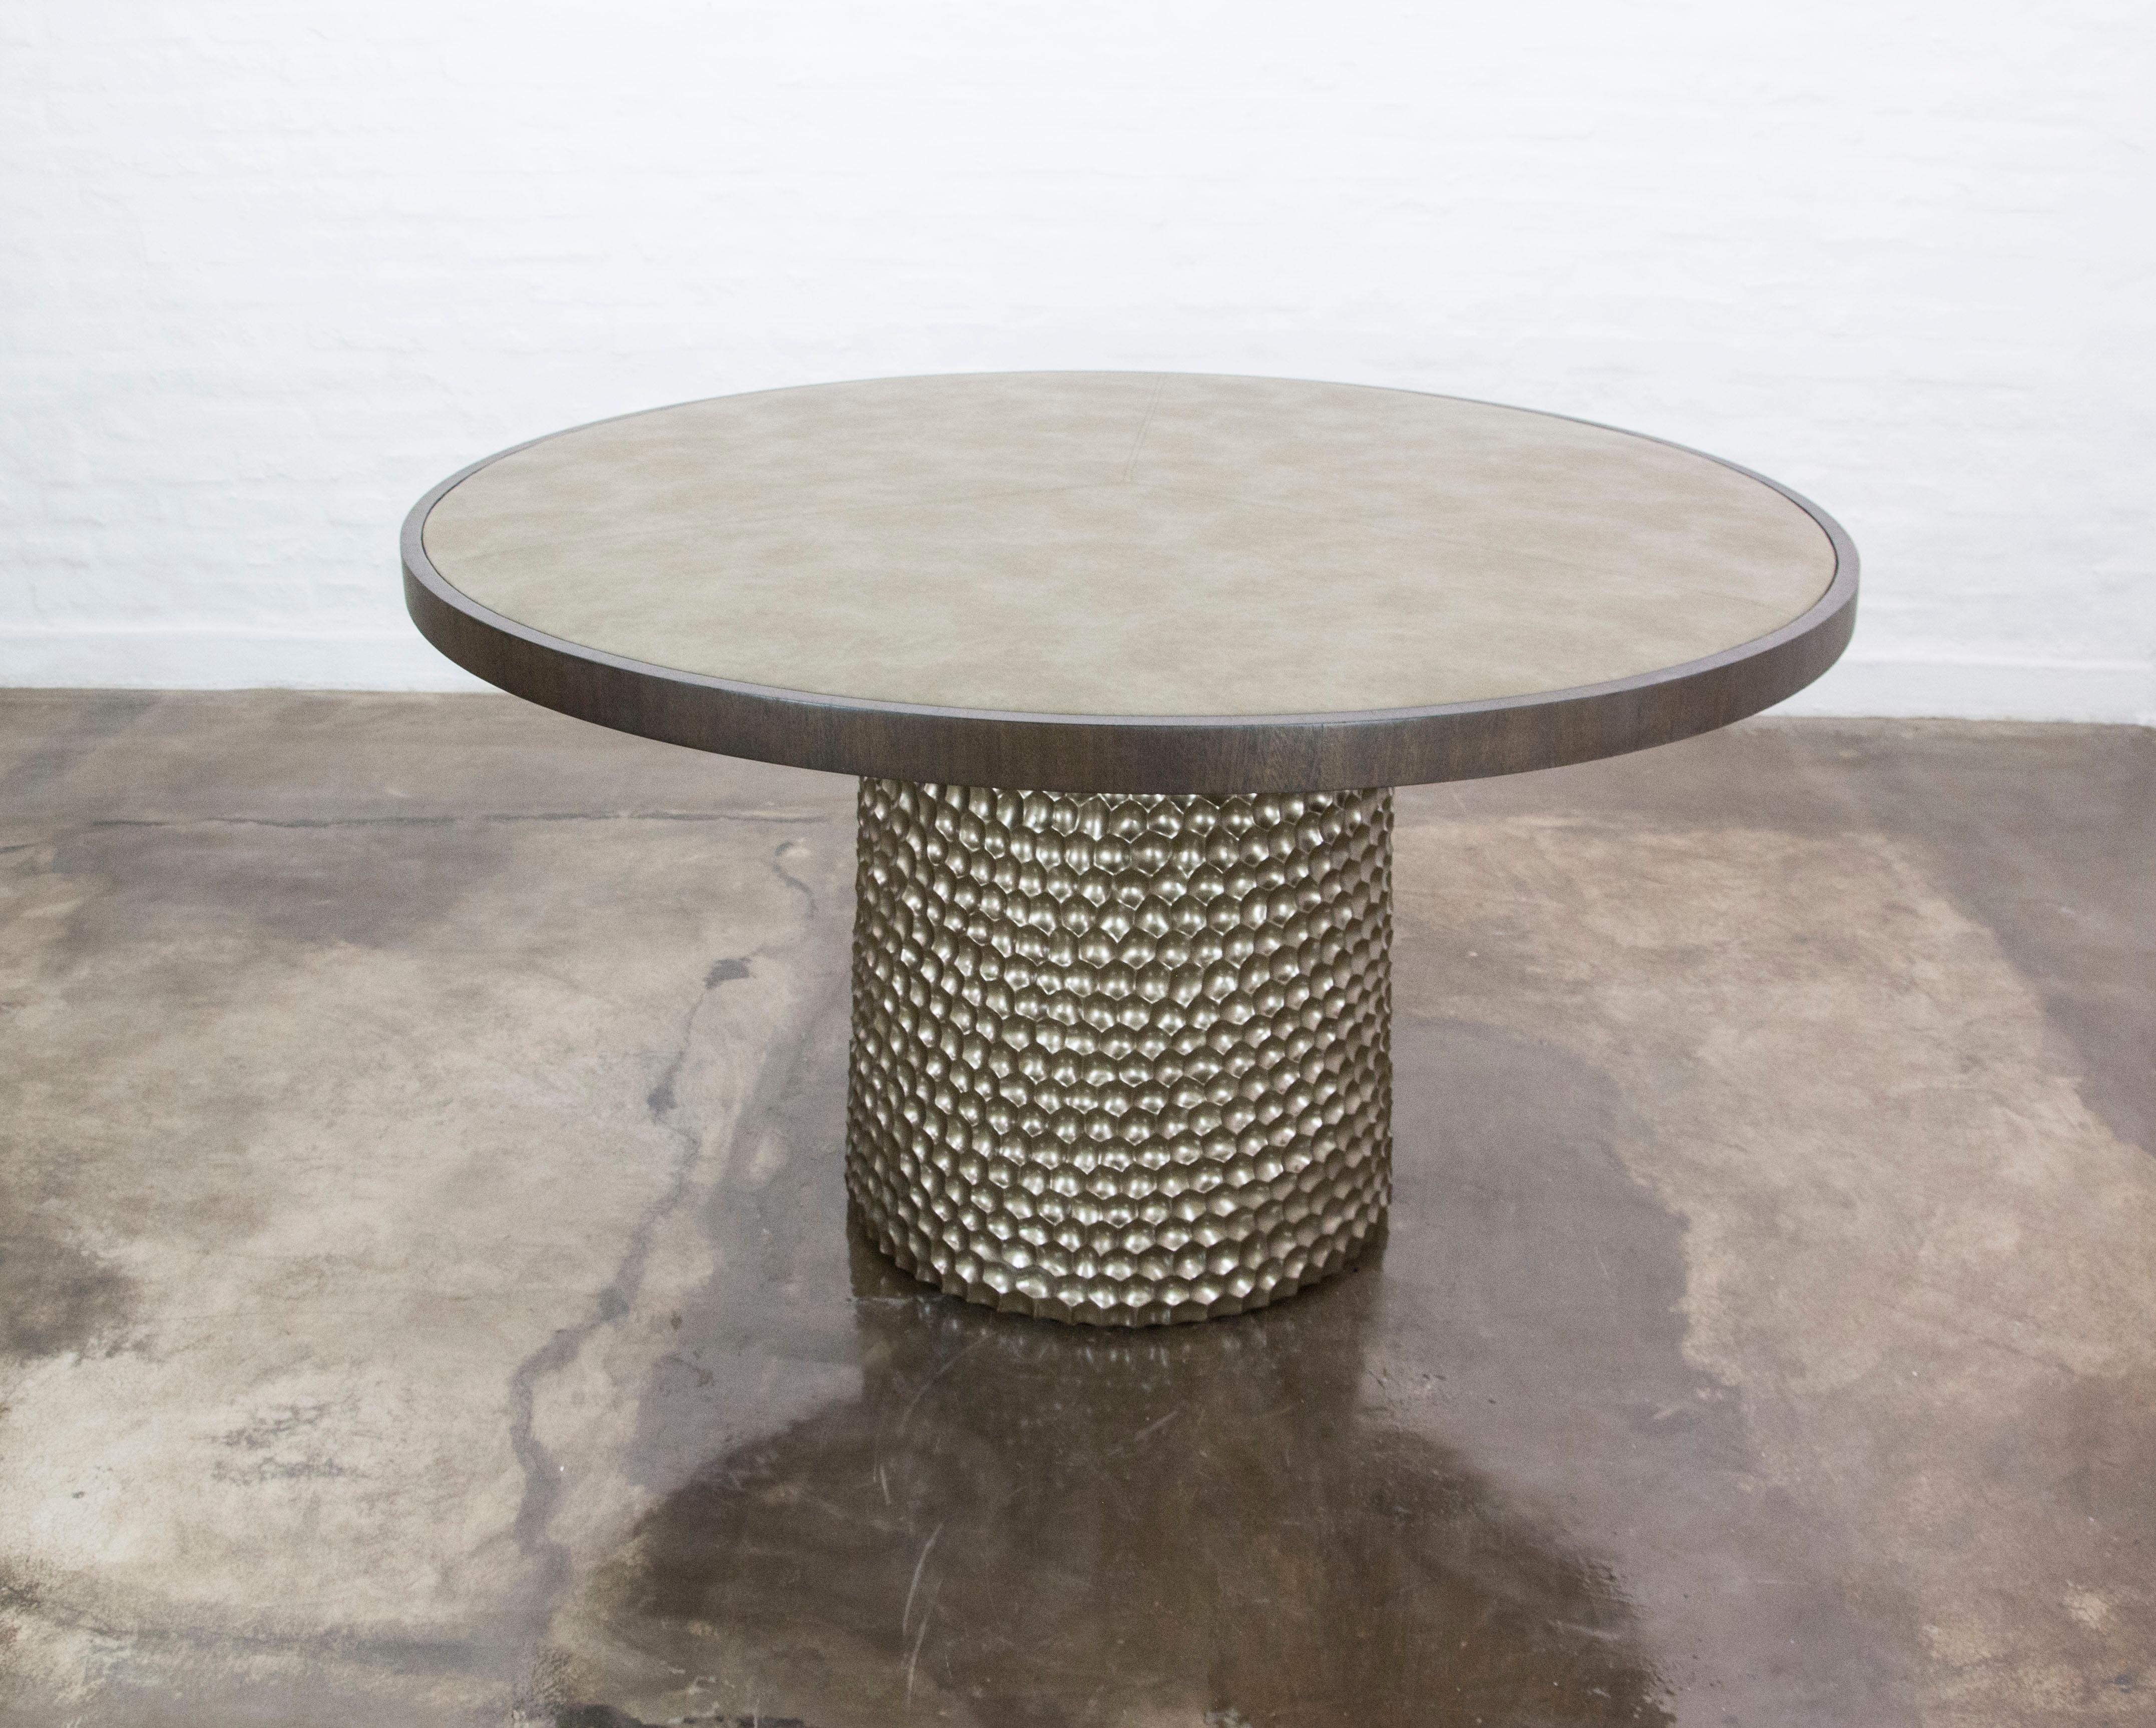 Dieser skulpturale runde Spieltisch aus geschnitztem Metallholz und Stoff von Costantini Design ist handgeschnitzt und die Platte ist mit einem Stoff oder Leder Ihrer Wahl bezogen.  Auch als Ess-, Servier- oder Mitteltisch geeignet.  

Die Maße sind